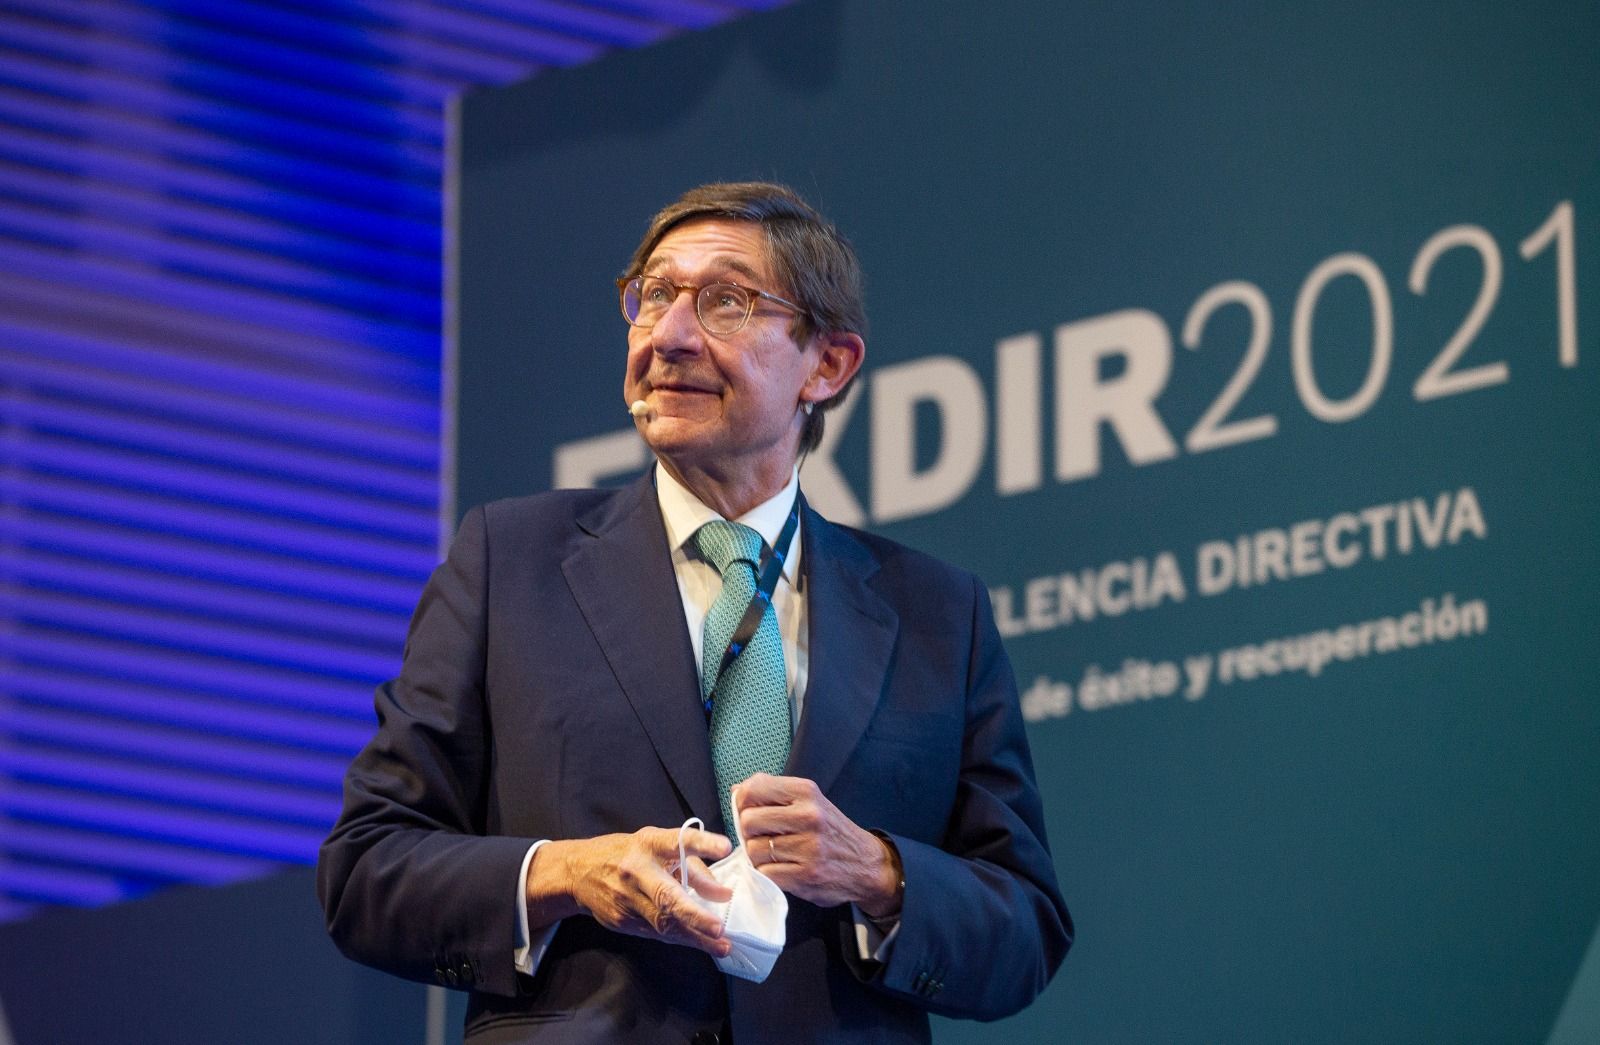 El presidente de CaixaBank, José Ignacio Goirigolzarri, participa en el III Foro Fexdir celebrado en Alicante